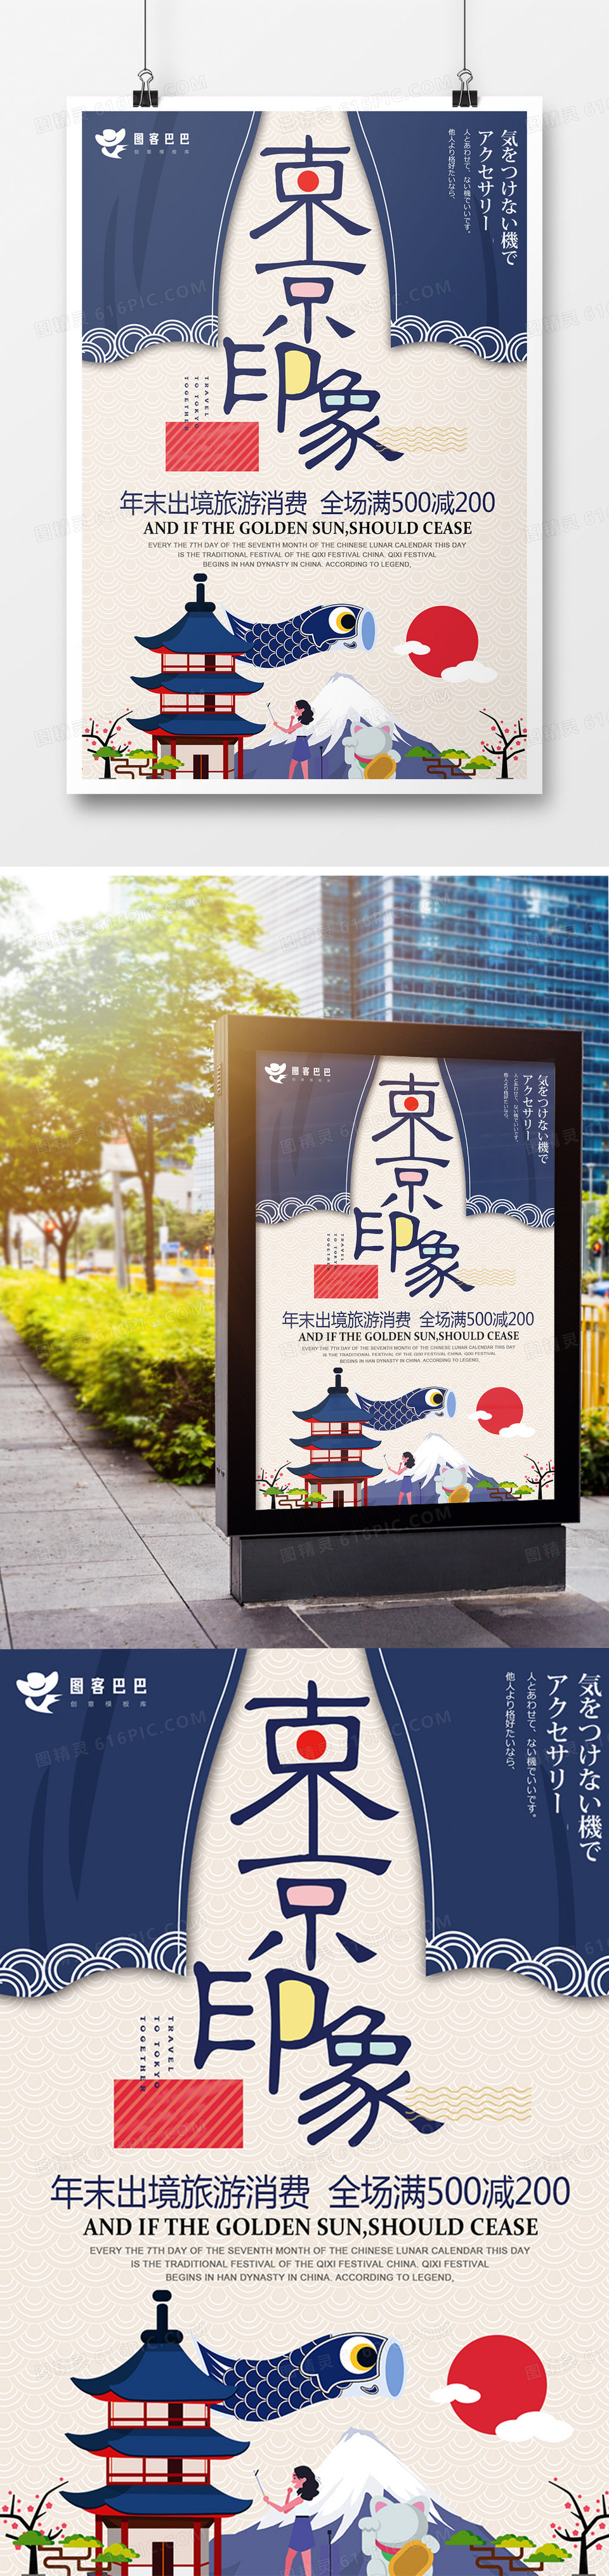 蓝色大气日本旅游海报设计宣传海报